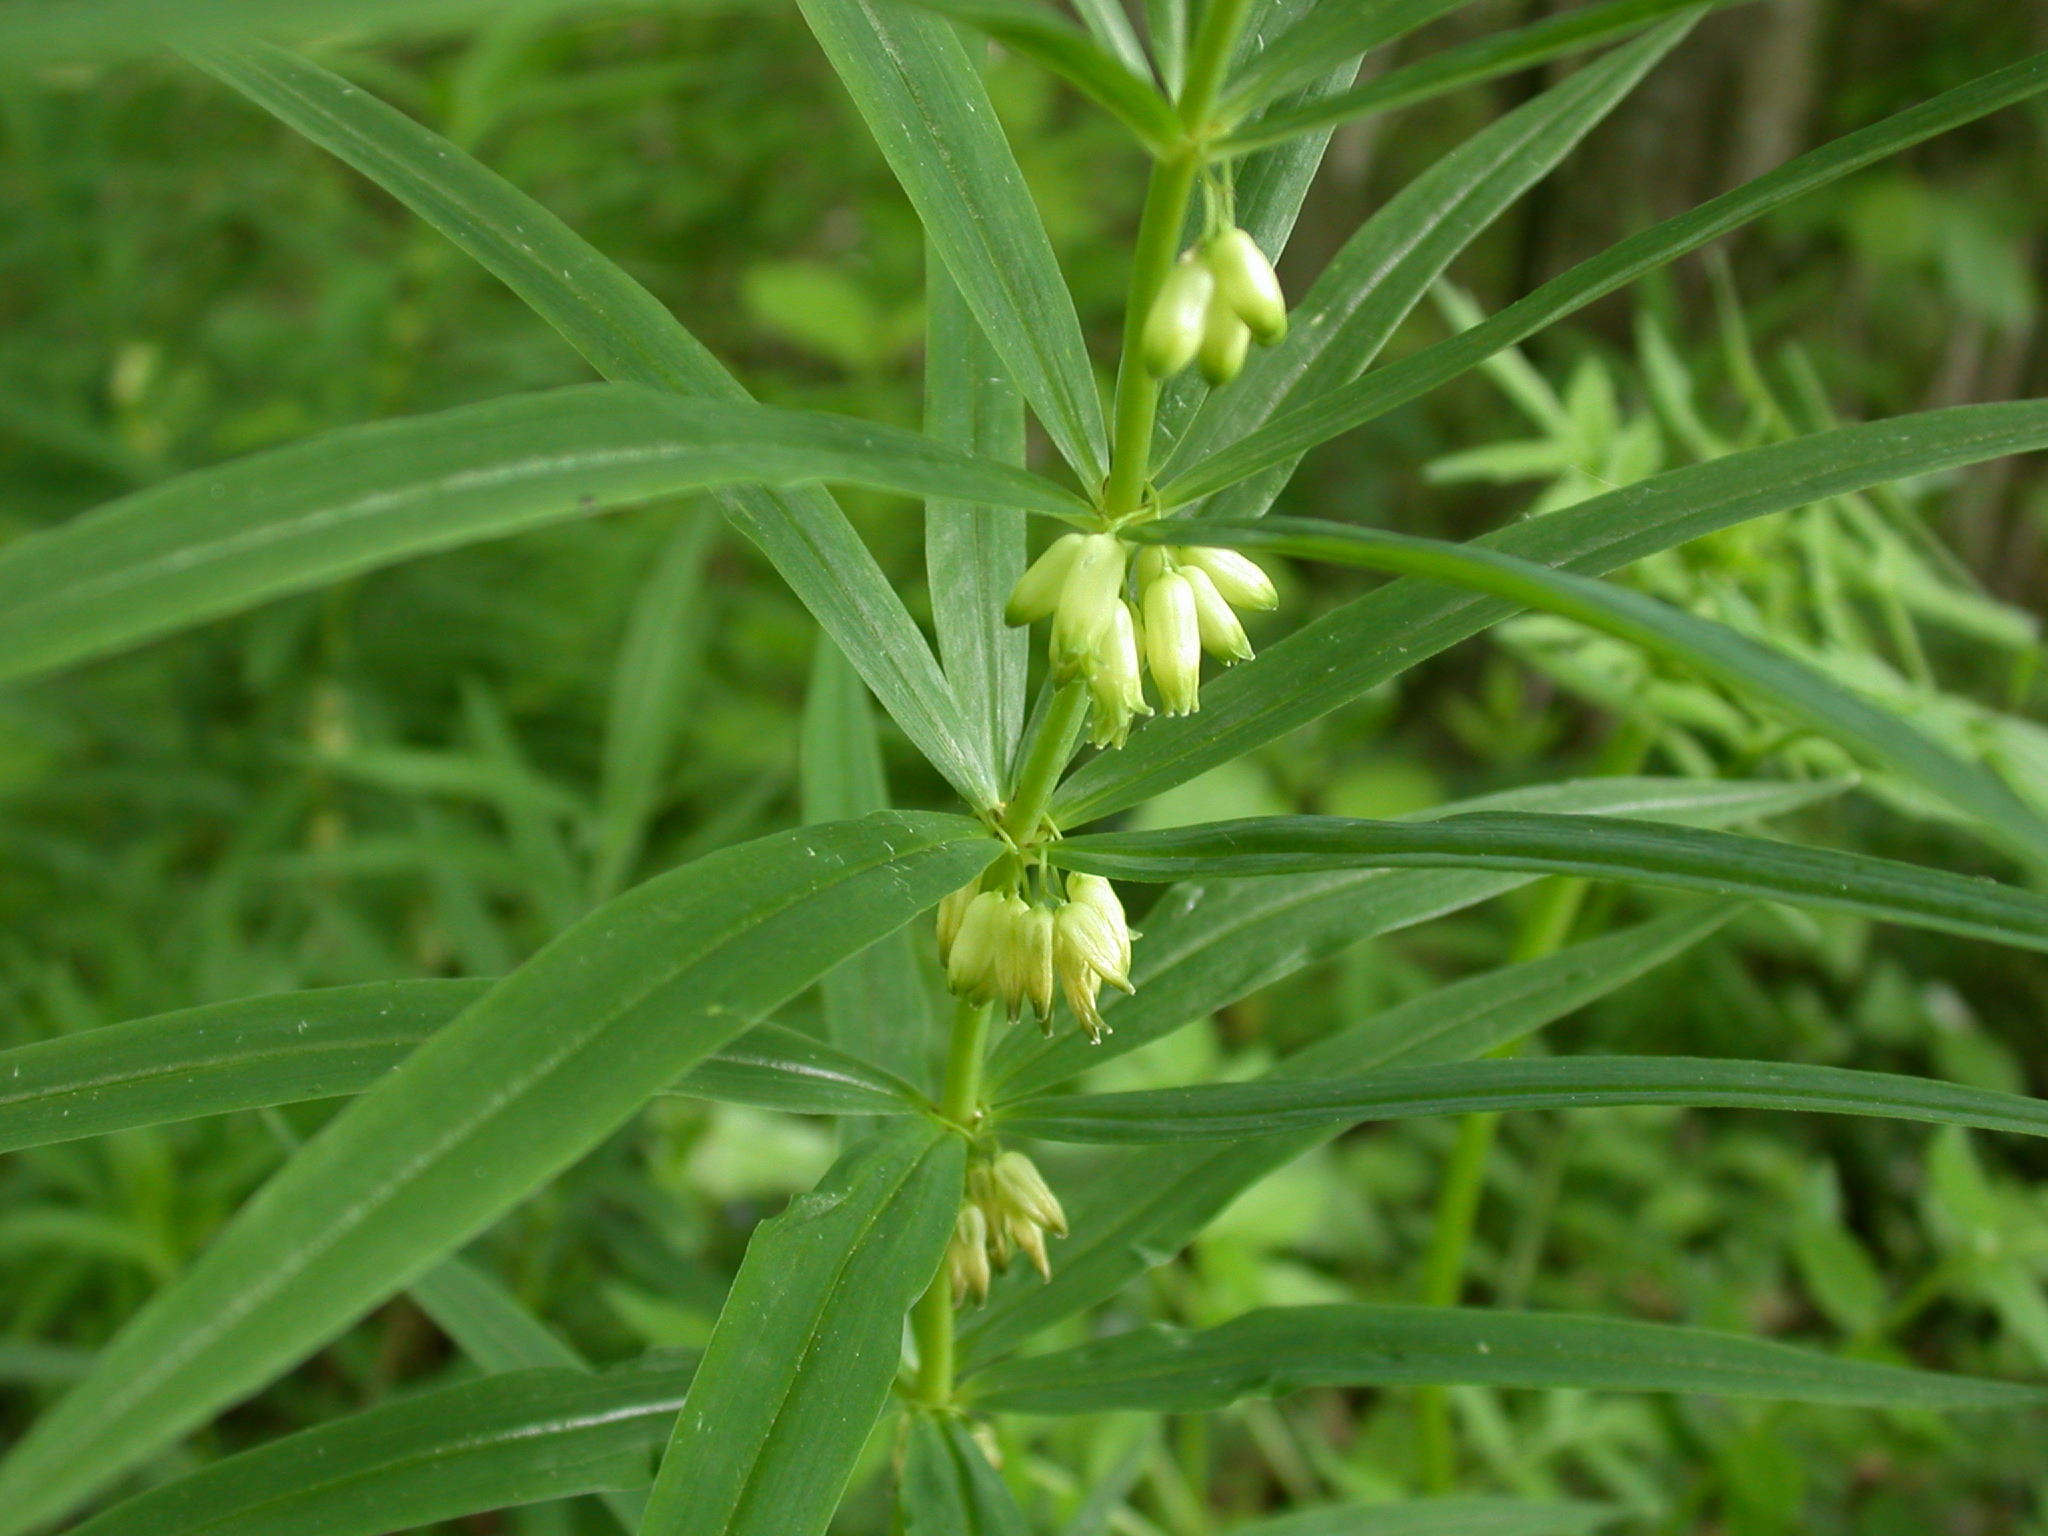 meda : Polygonatum verticillatum, Polygonatum cirrhifolium